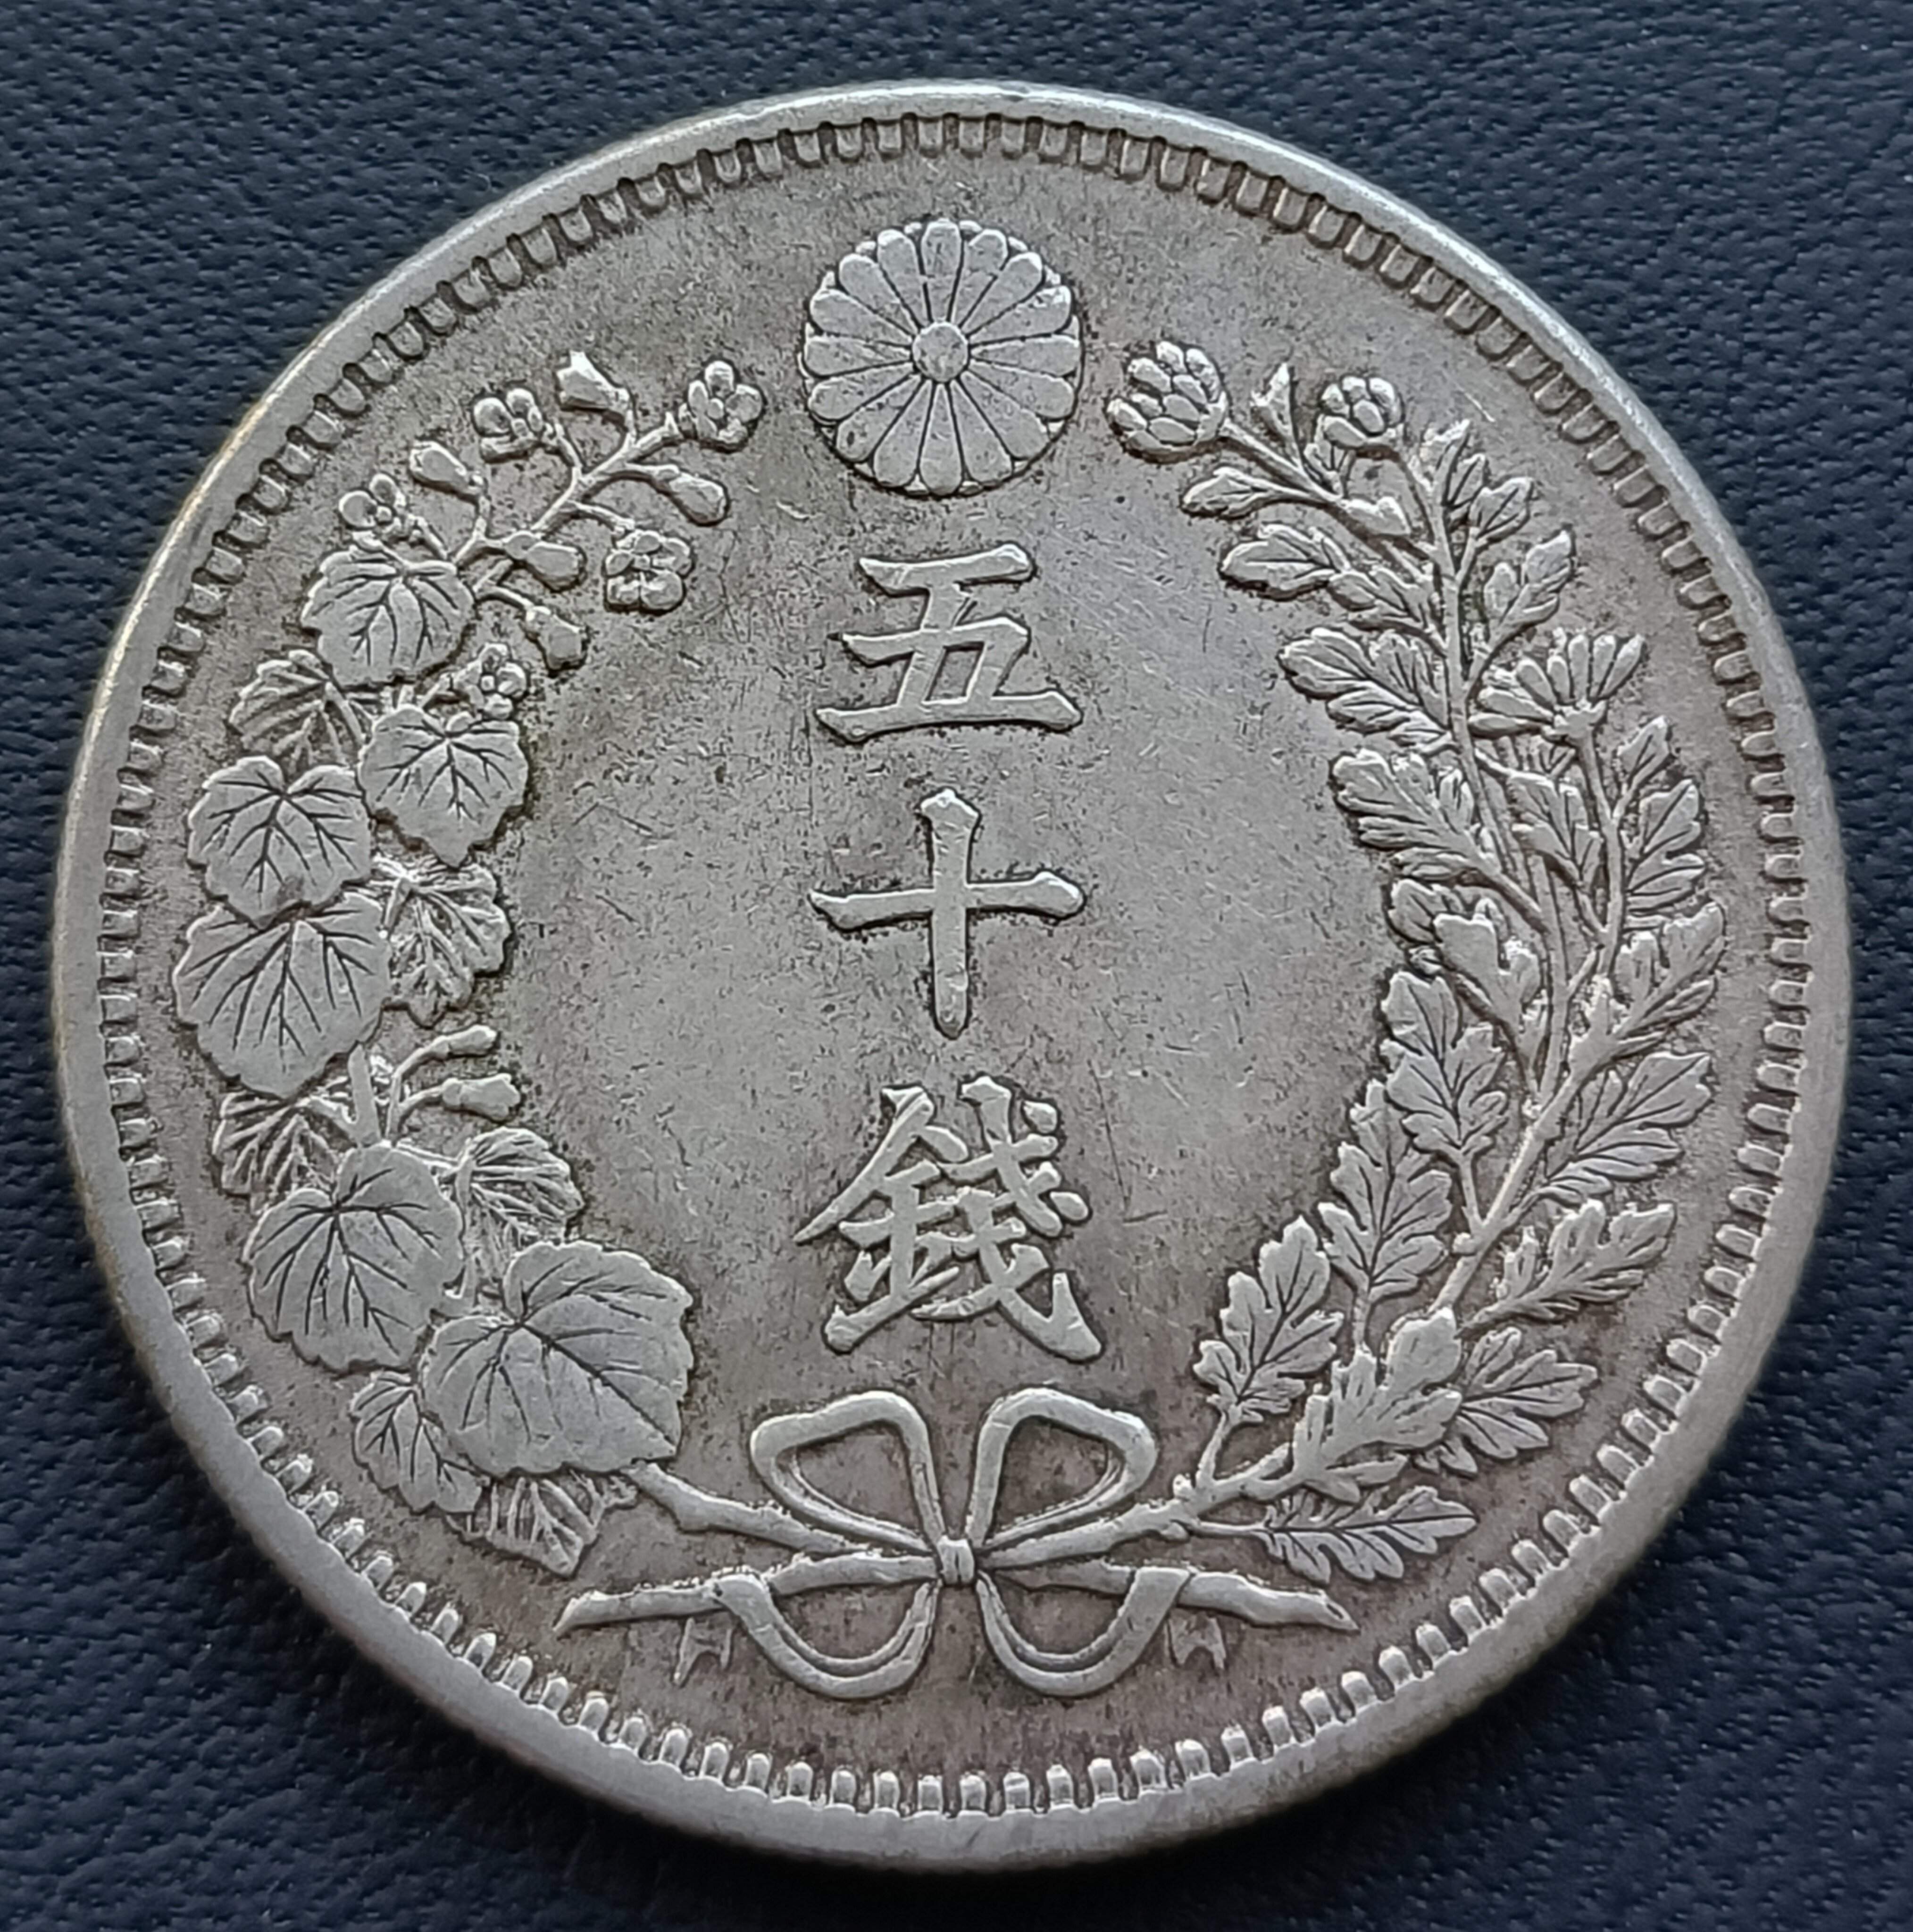 日本龍銀明治三十一年(1898年) 五十錢50錢重13.43g 銀幣(80%銀) 2391 